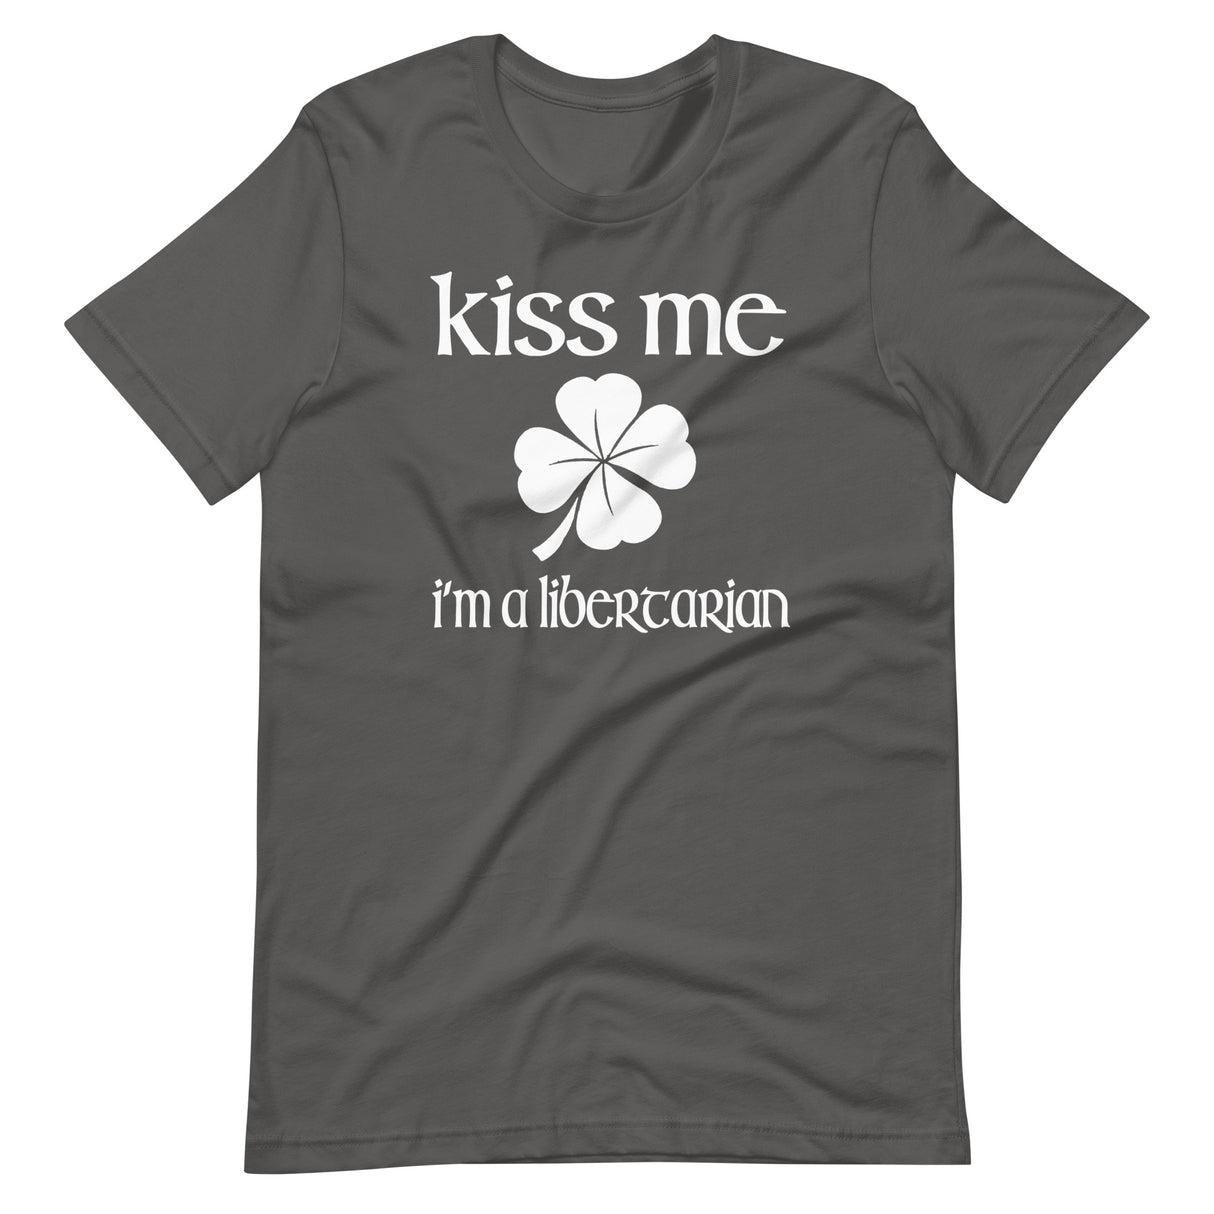 Kiss Me I'm a Libertarian Shirt - Libertarian Country